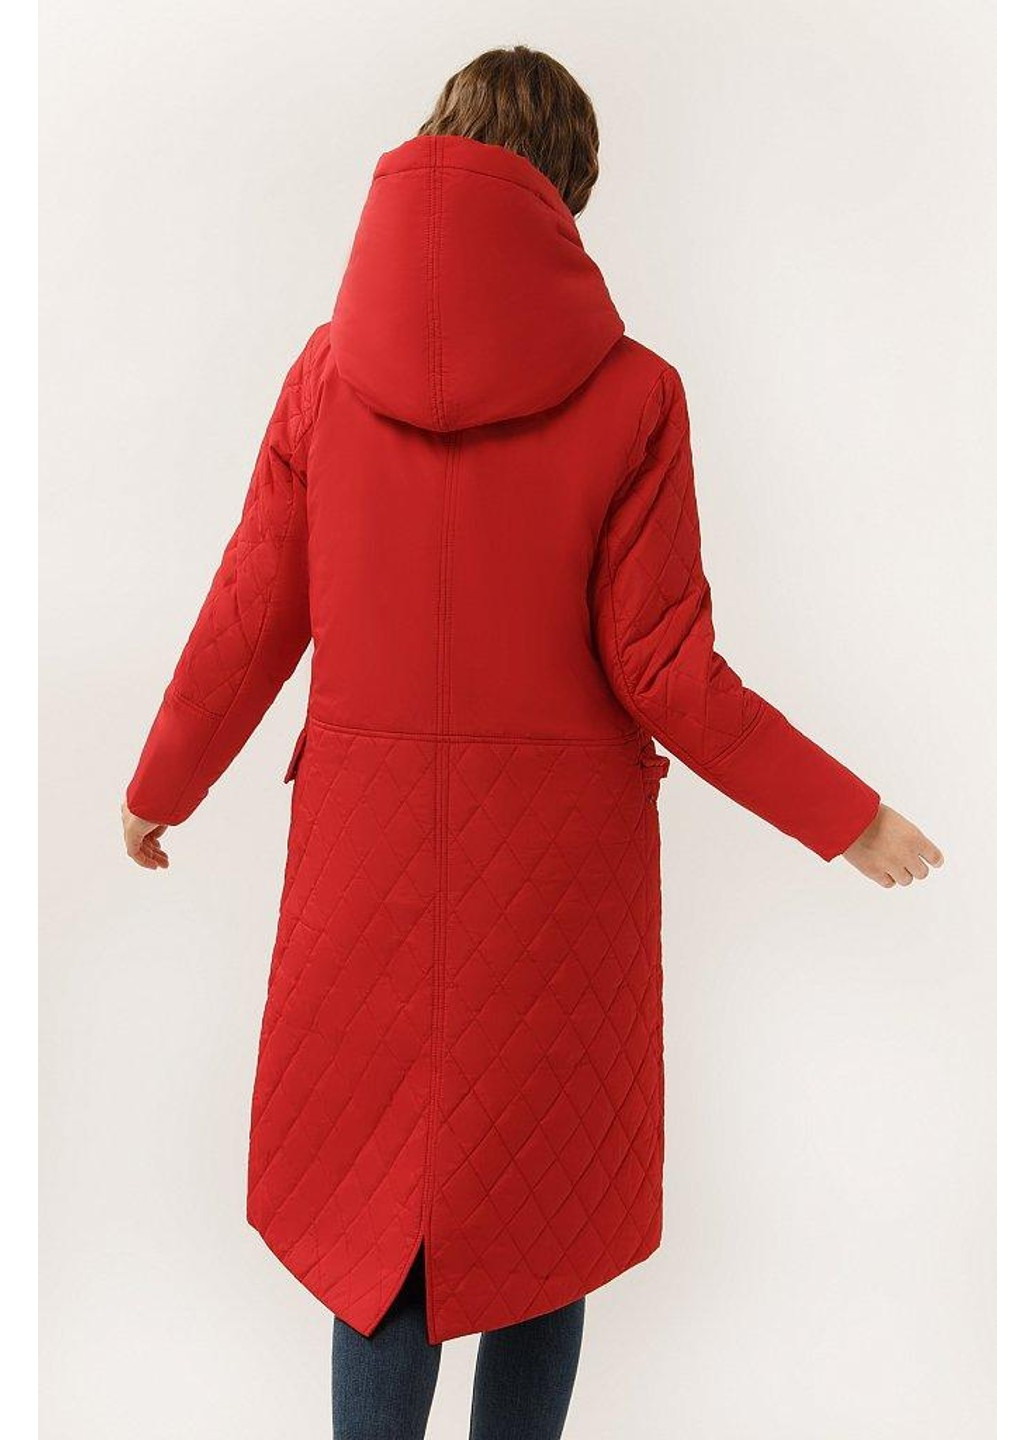 Красная демисезонная куртка a19-12097-300 Finn Flare